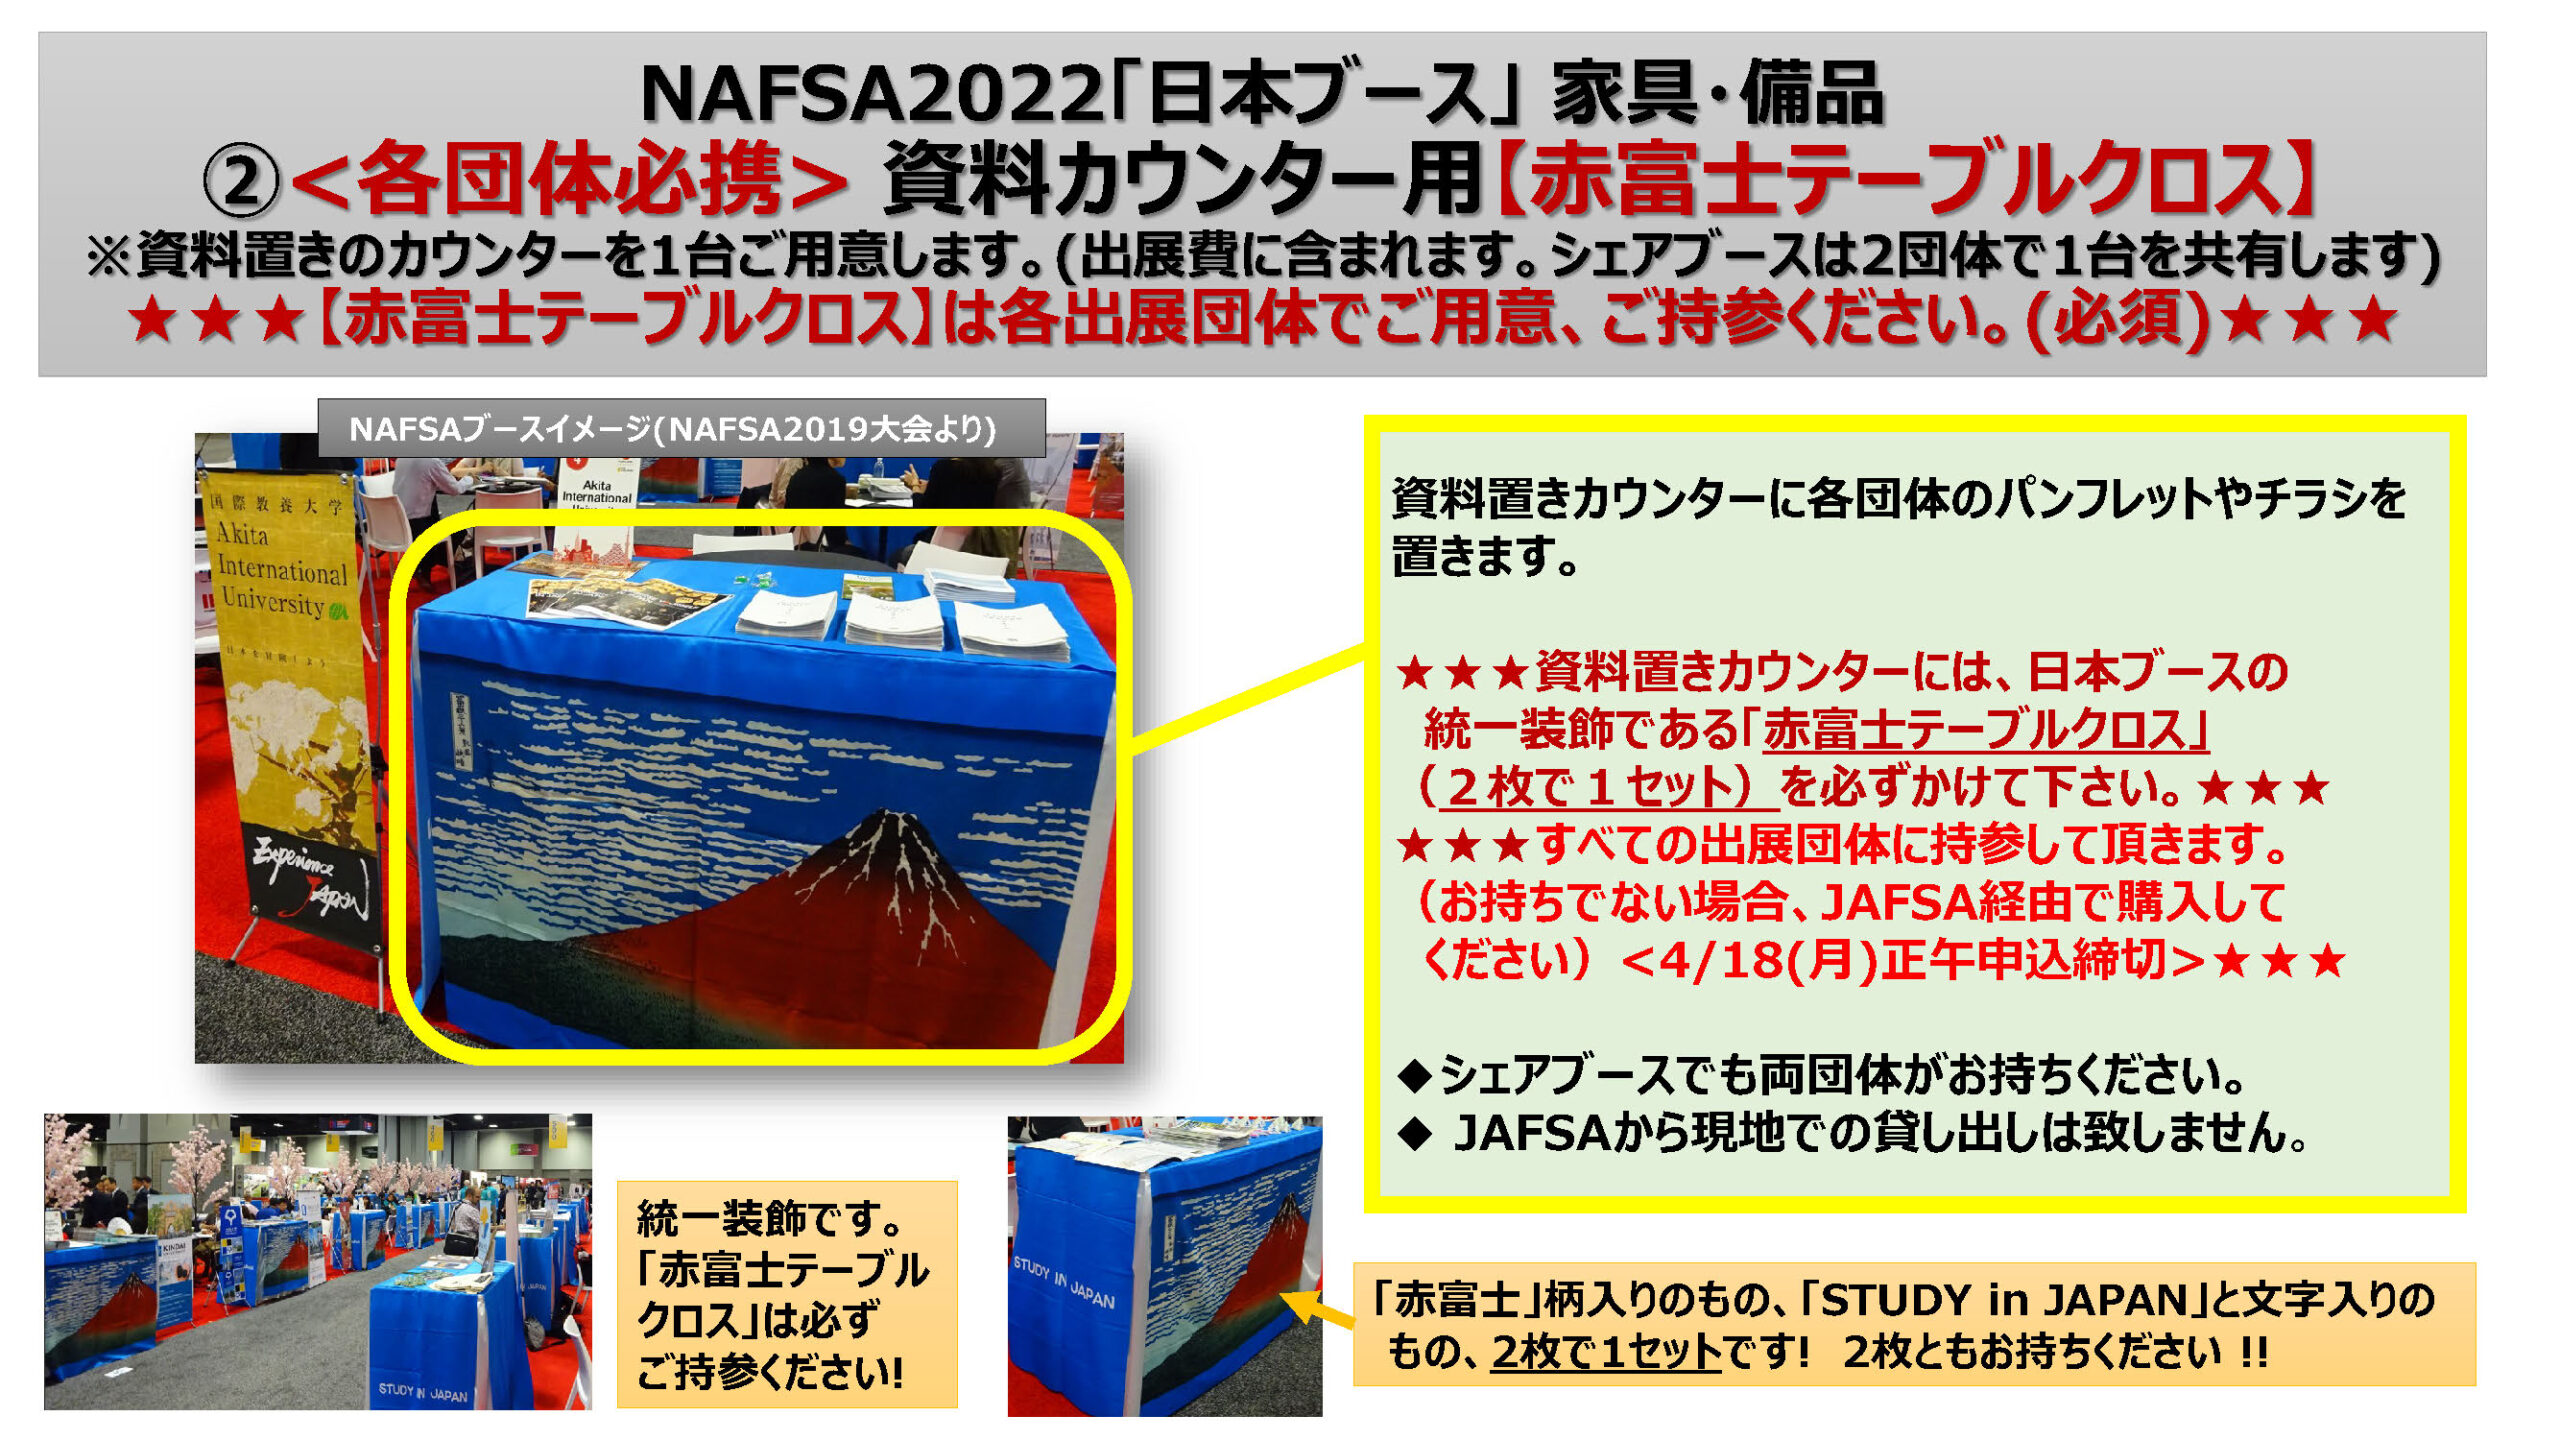 追加家具、赤富士クロス、団体名バナー「イメージ資料」P3 (NAFSA2022)